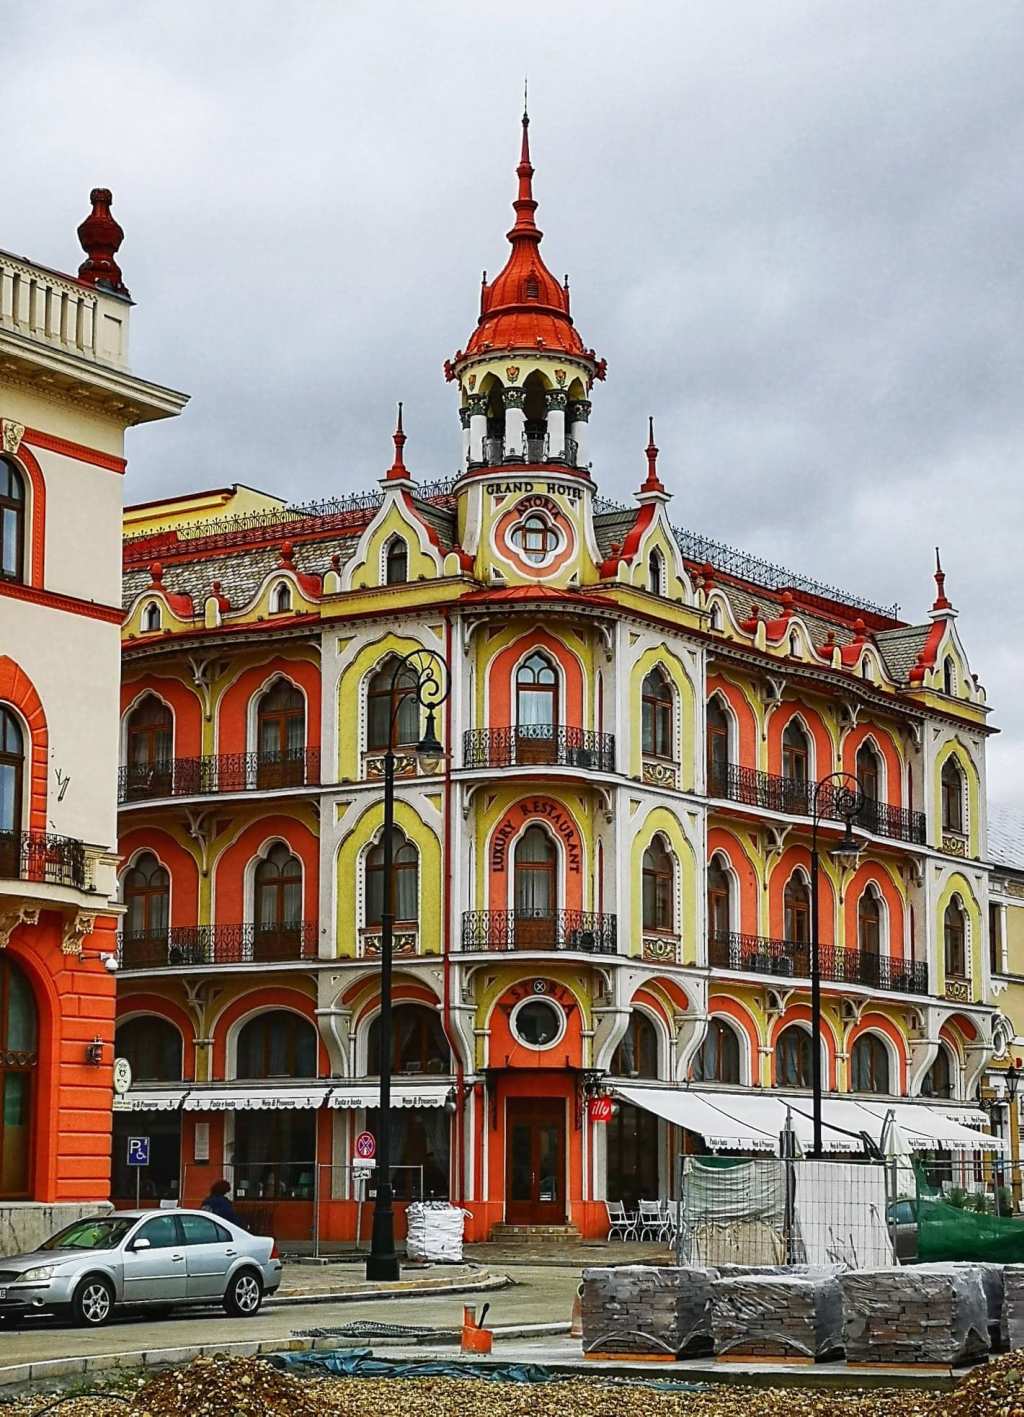 Ce poți vizita în Oradea? | Lasam Urme